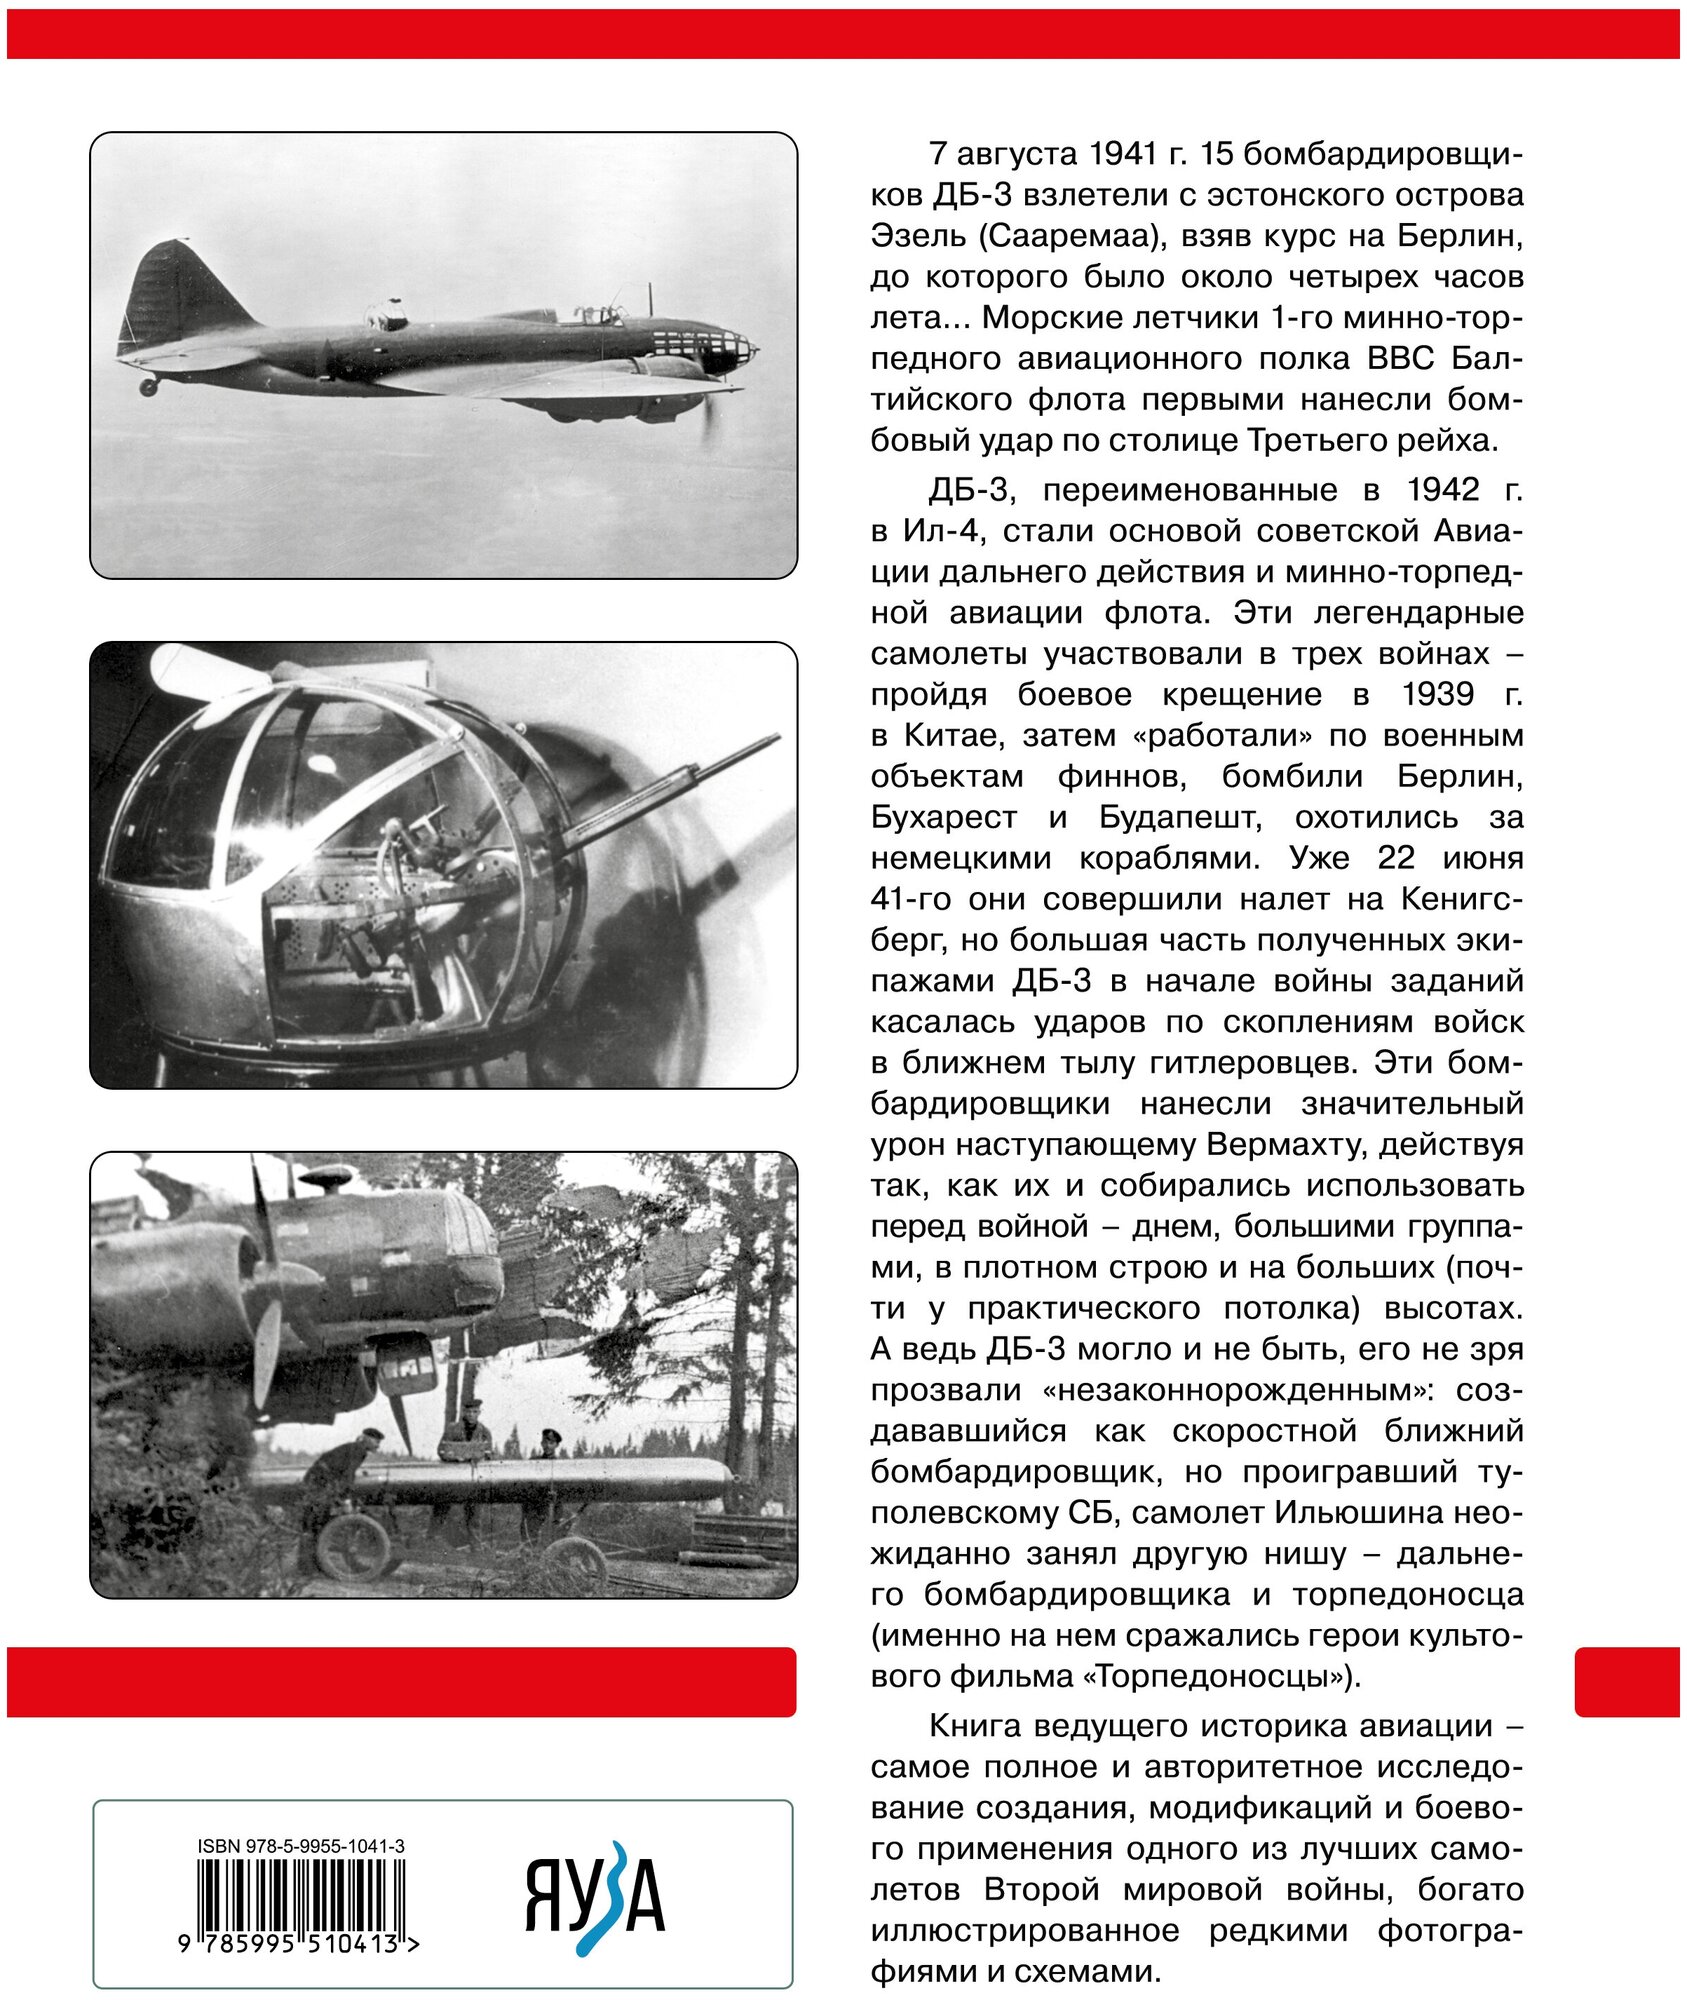 ДБ-3/Ил-4 и его модификации. Торпедоносец и основа Авиации Дальнего Действия - фото №2